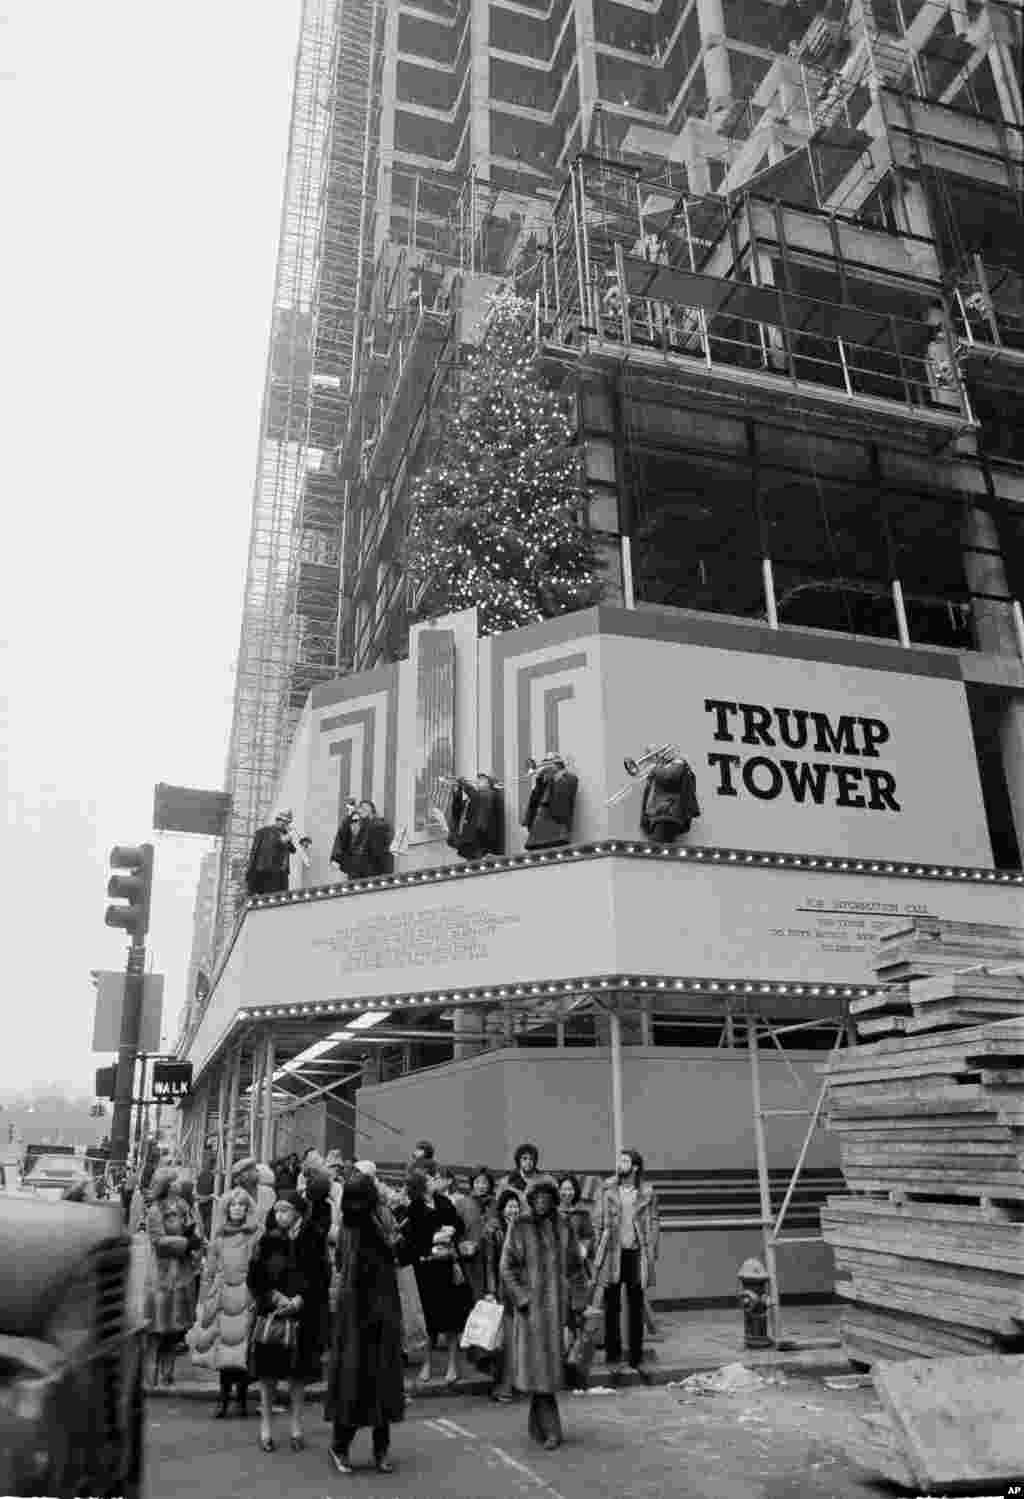 Bendi ikicheza kwenye baraza ya jengo la Trump Tower ambalo halijamalizika katika mtaa wa&nbsp;&nbsp; New York wa&nbsp; Fifth Avenue huku wanunuzi wakitafuta zawadi za kritsmasi. Dec. 23, 1981. (AP Photo/Suzanne Vlamis)